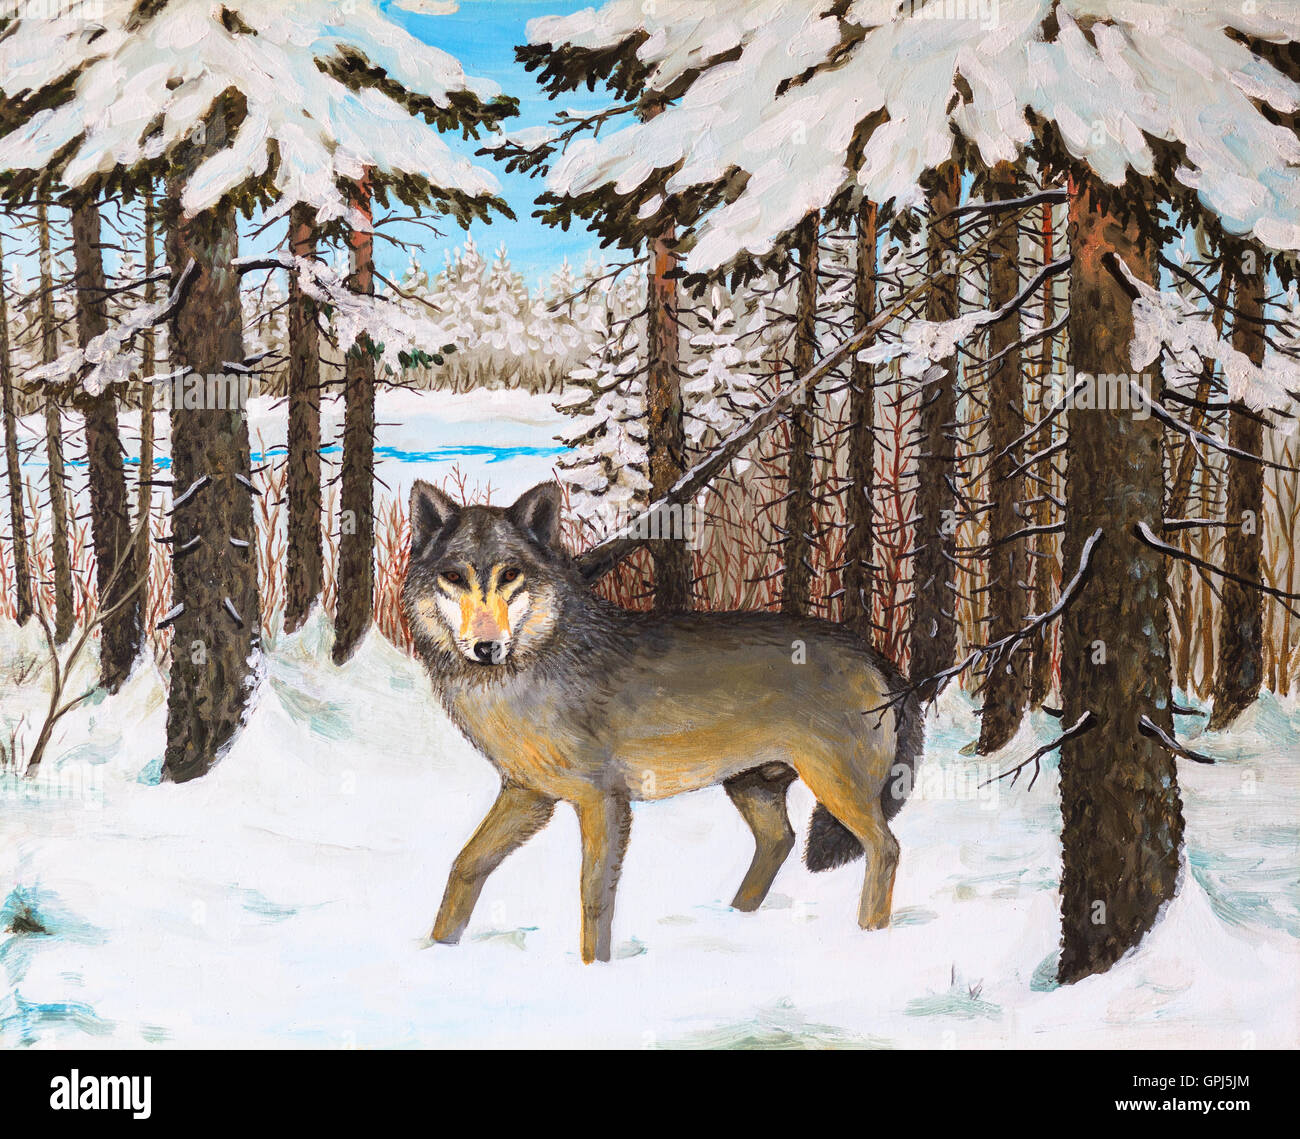 Ölgemälde - Wolf im Pinienwald, Winter, buntes Bild, abstrakte Zeichnung Stockfoto